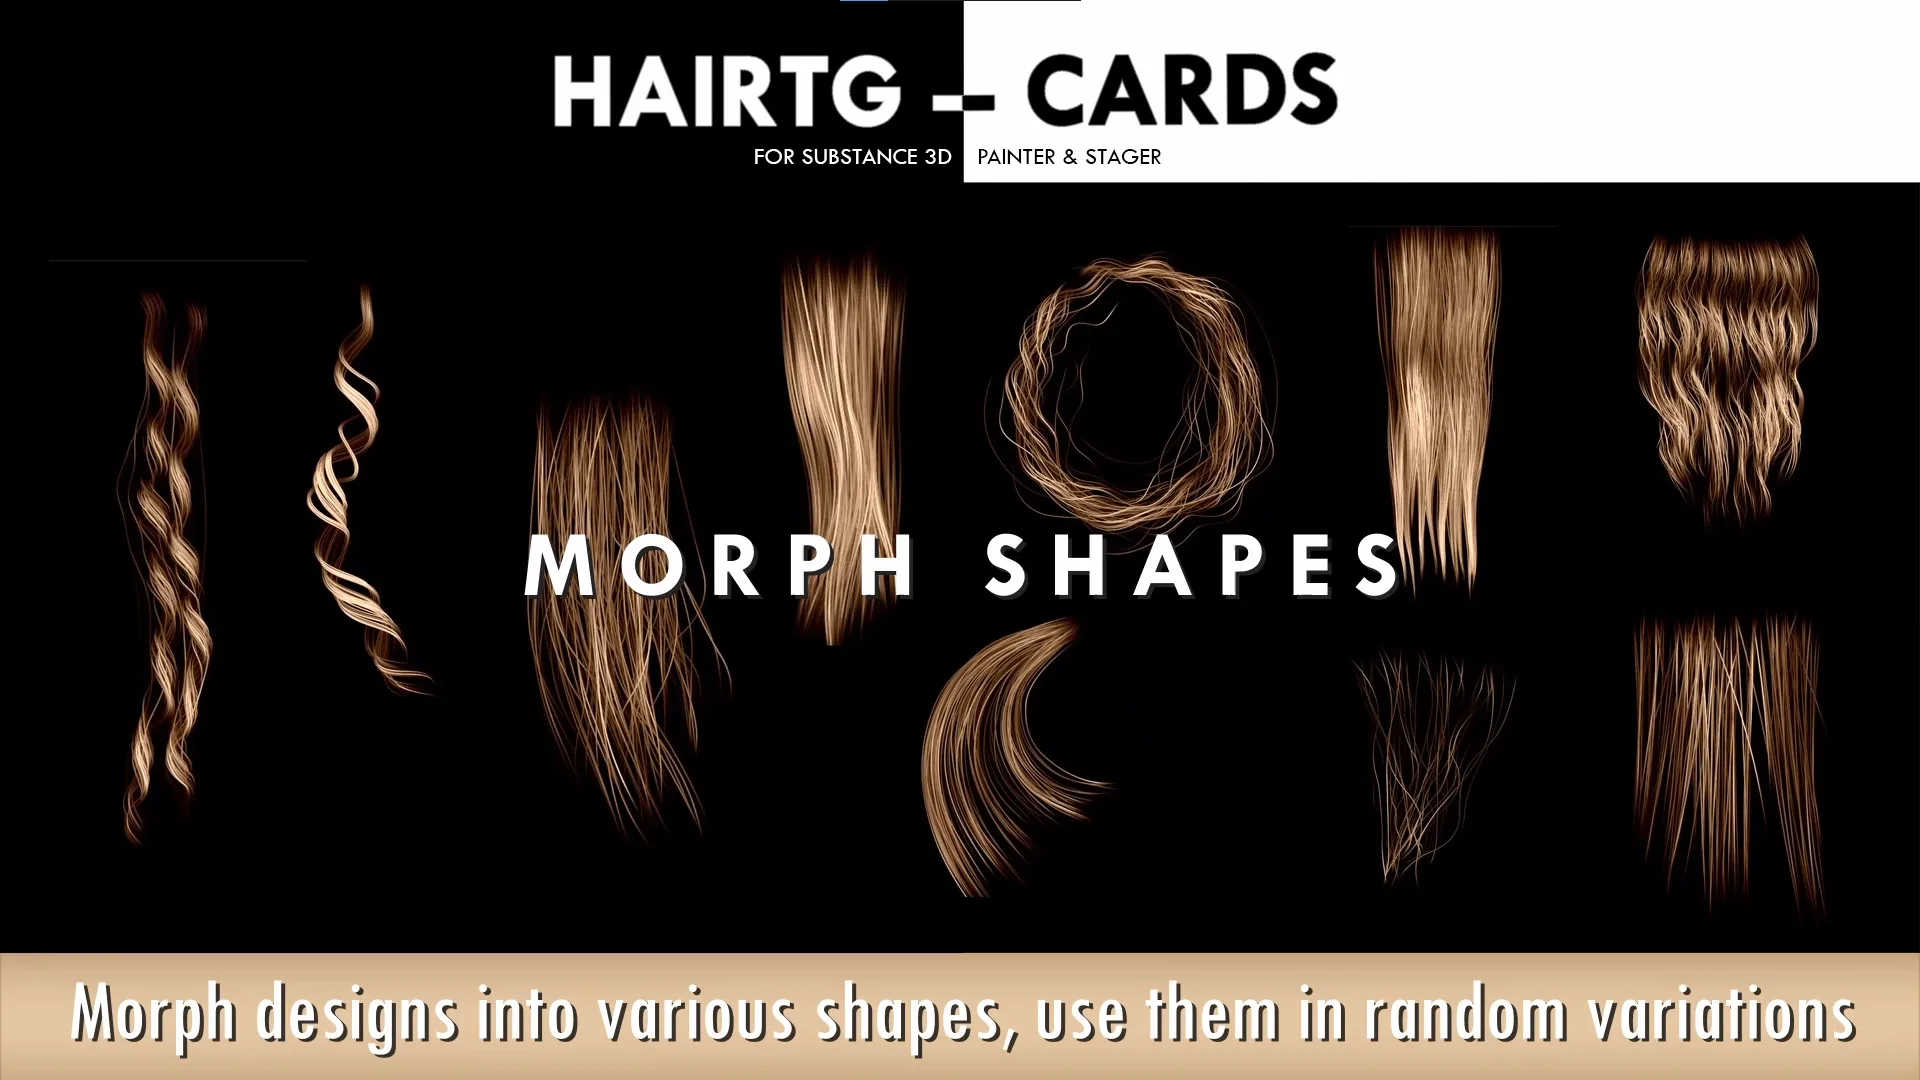 HairTG-Cards